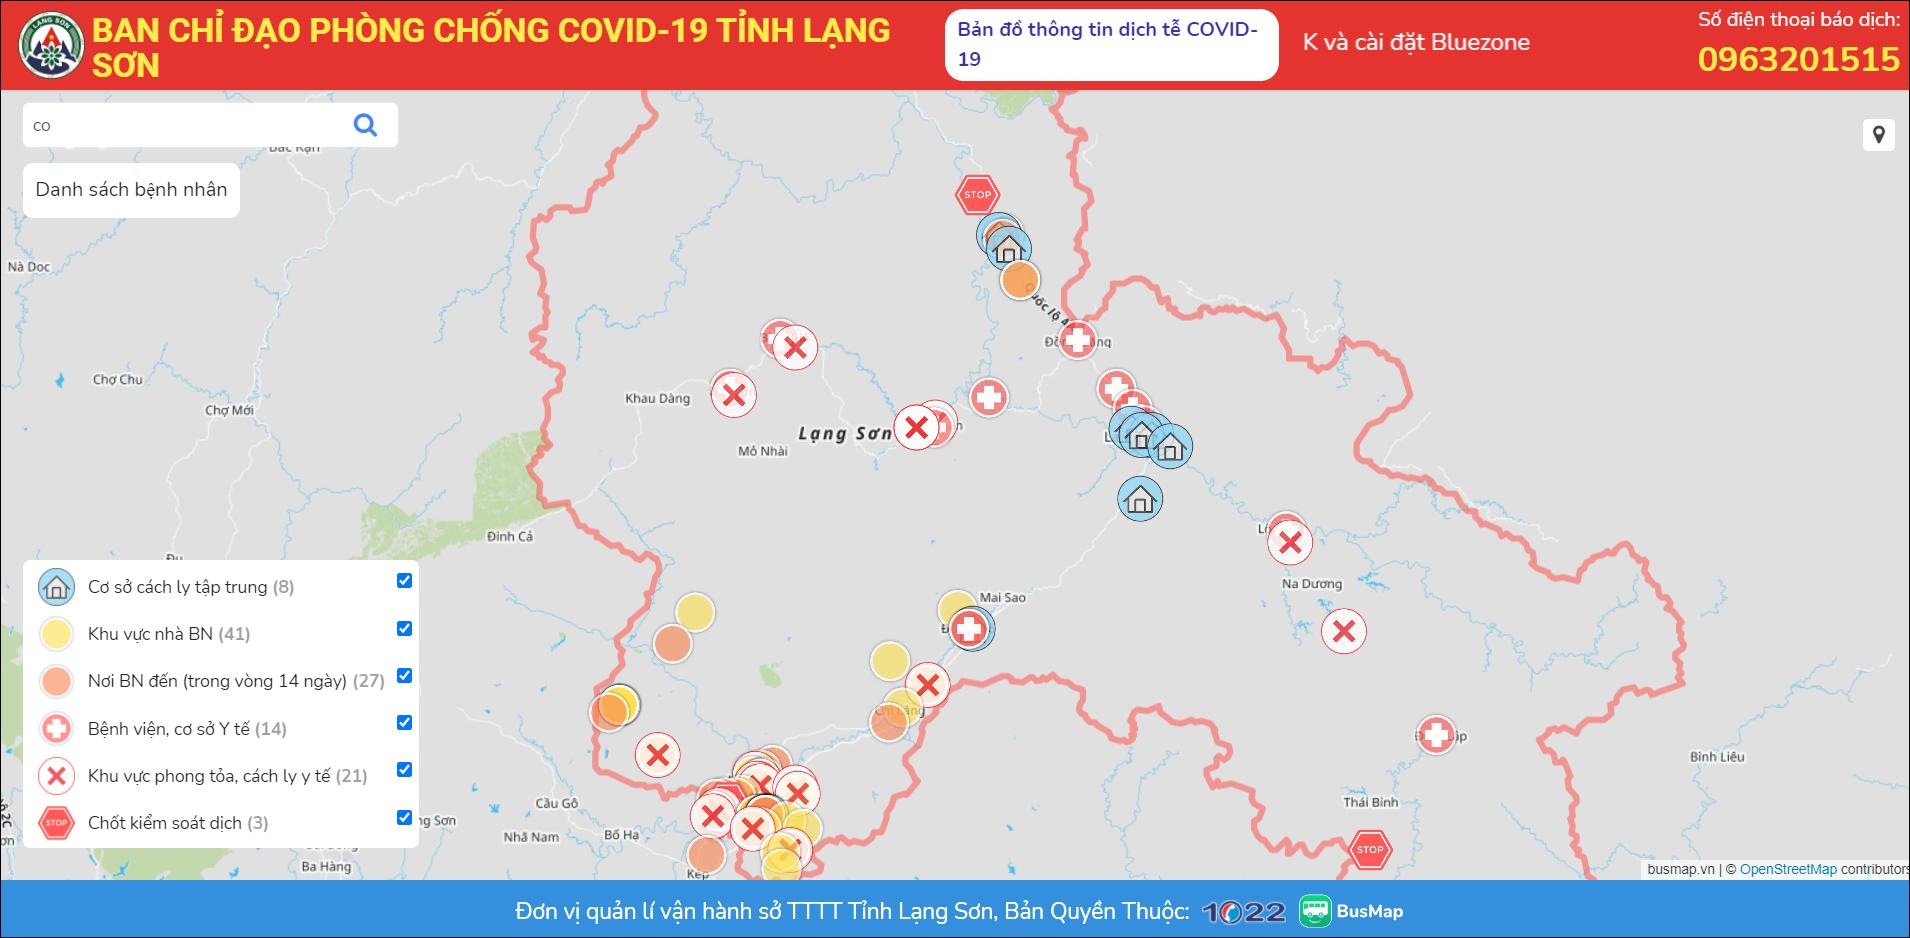 Theo dõi dịch bằng bản đồ Covid-19 Lạng Sơn 2024 giúp bạn đánh giá tình hình dịch tại Lạng Sơn một cách tổng quan và nhanh chóng nhất. Hãy đón xem để biết thêm thông tin về các khu vực được cách li, đóng cửa và các biện pháp phòng chống dịch hiệu quả.